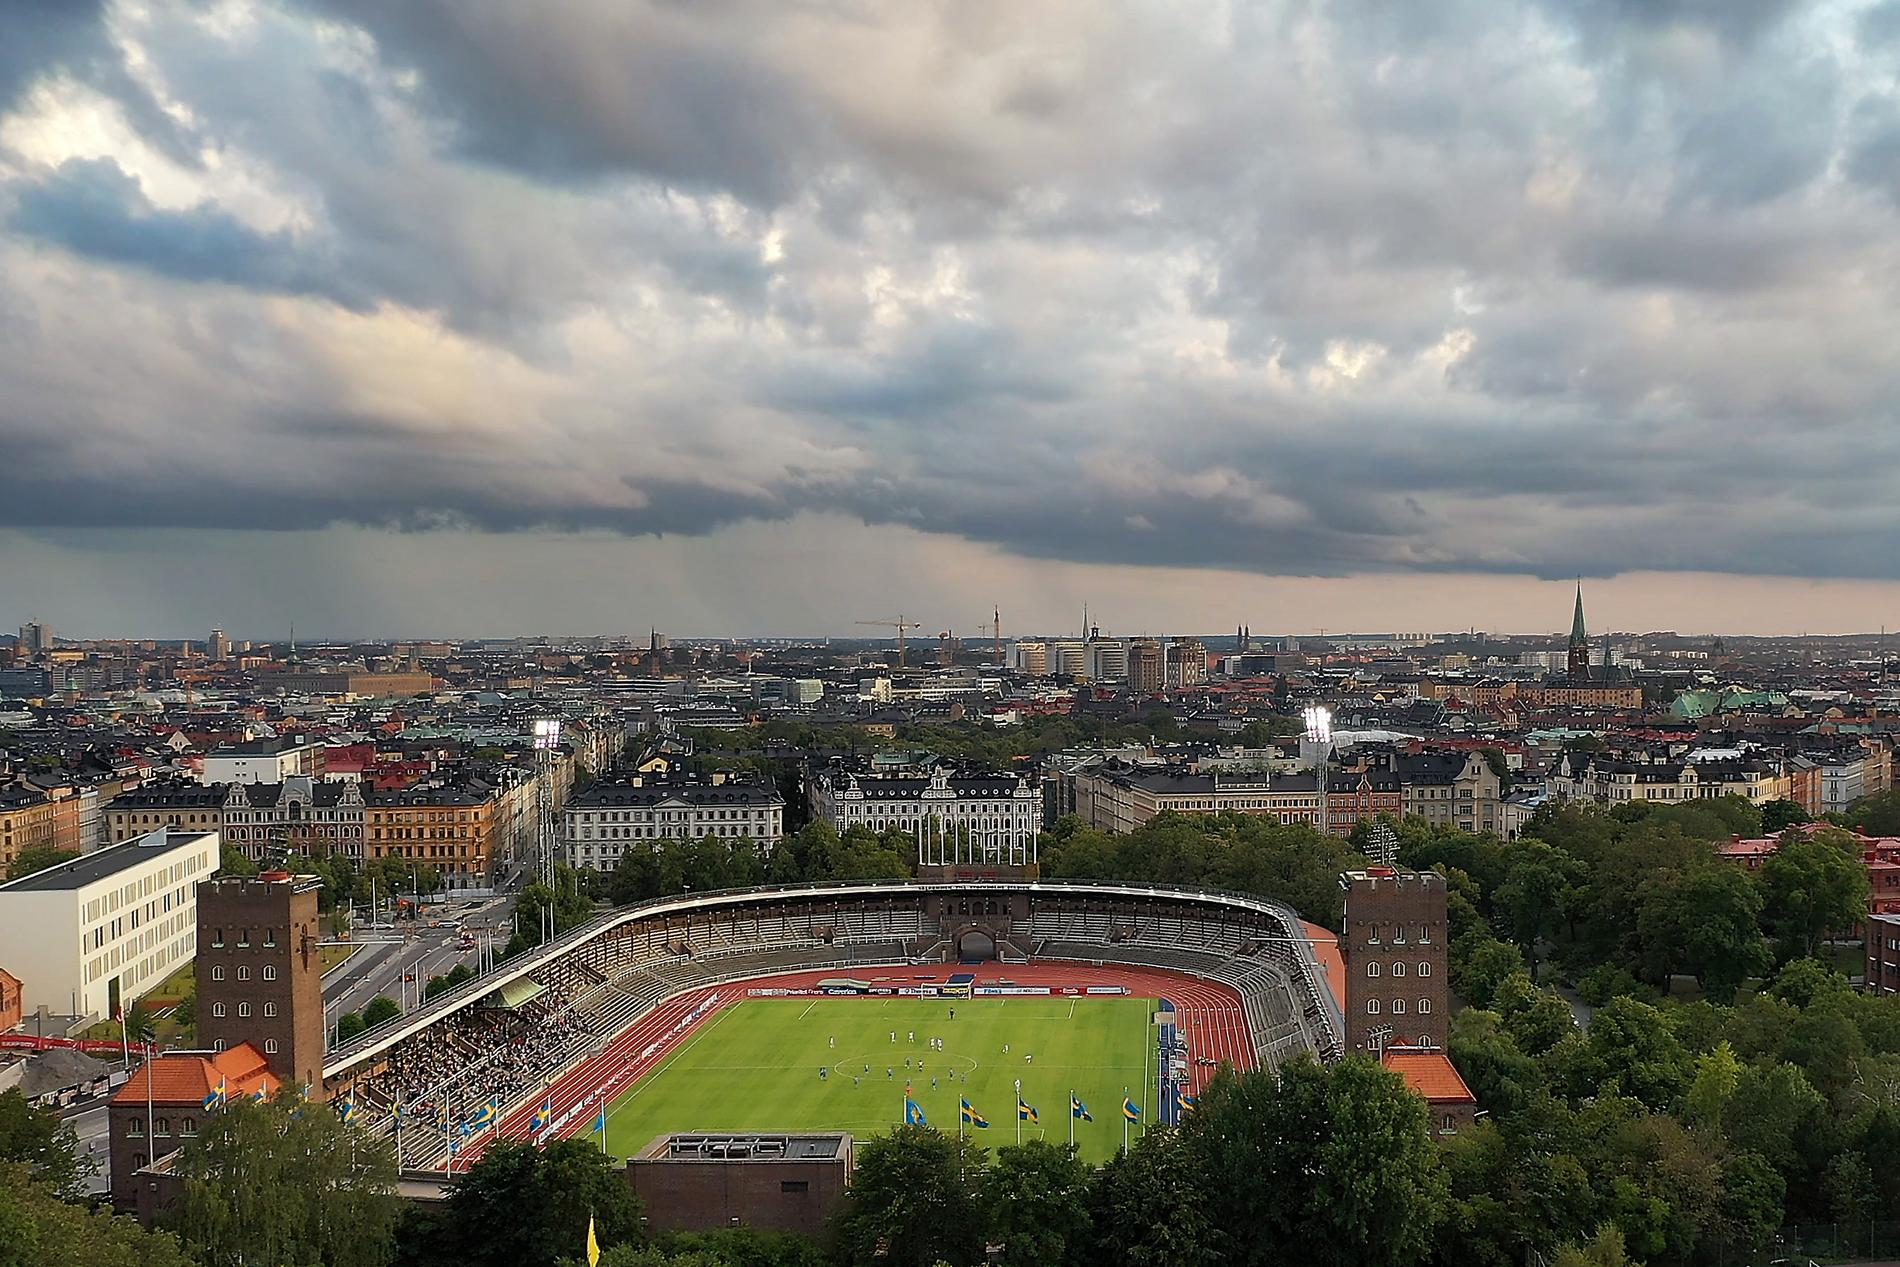 Stockholms stadion.